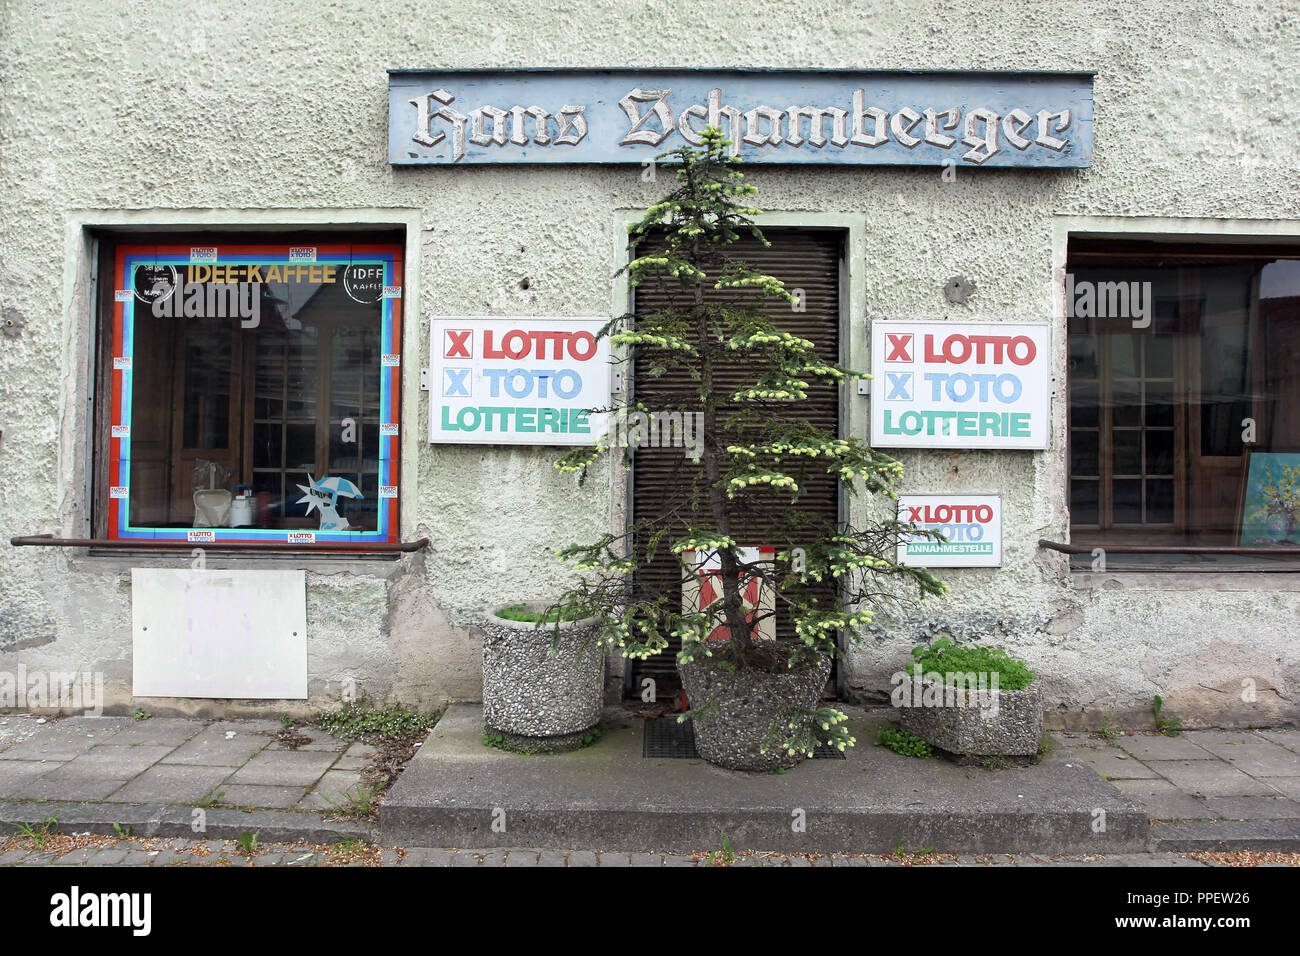 La Schamberger House, el antiguo emplazamiento de una tienda en la aldea en Maisach está amenazada de demolición. Foto de stock